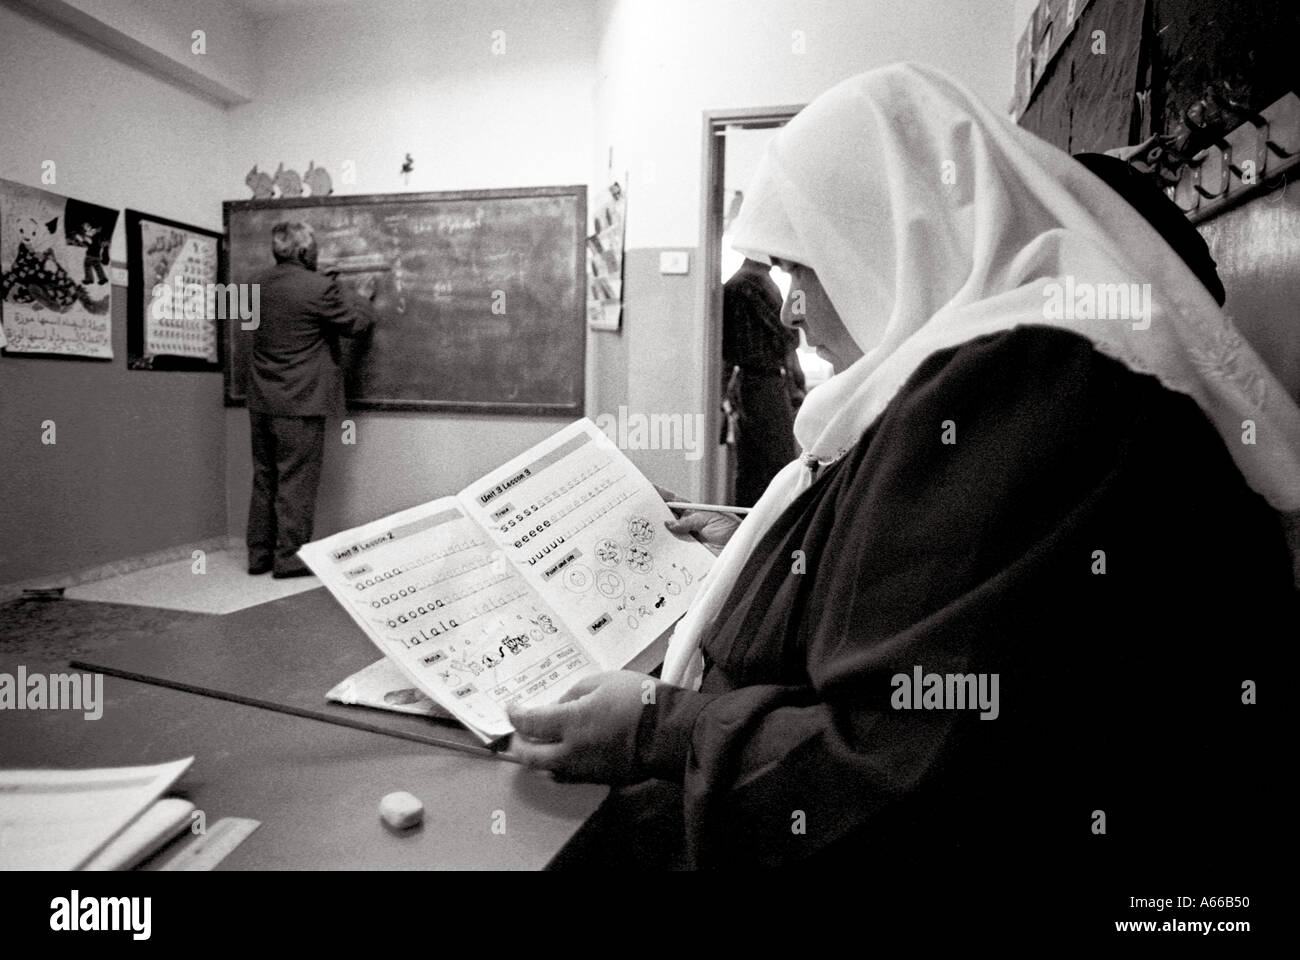 Donna palestinese di apprendimento della lingua inglese a classi organizzate dalle Nazioni Unite, El Fawar camp Hebron, Banca Wewst Foto Stock